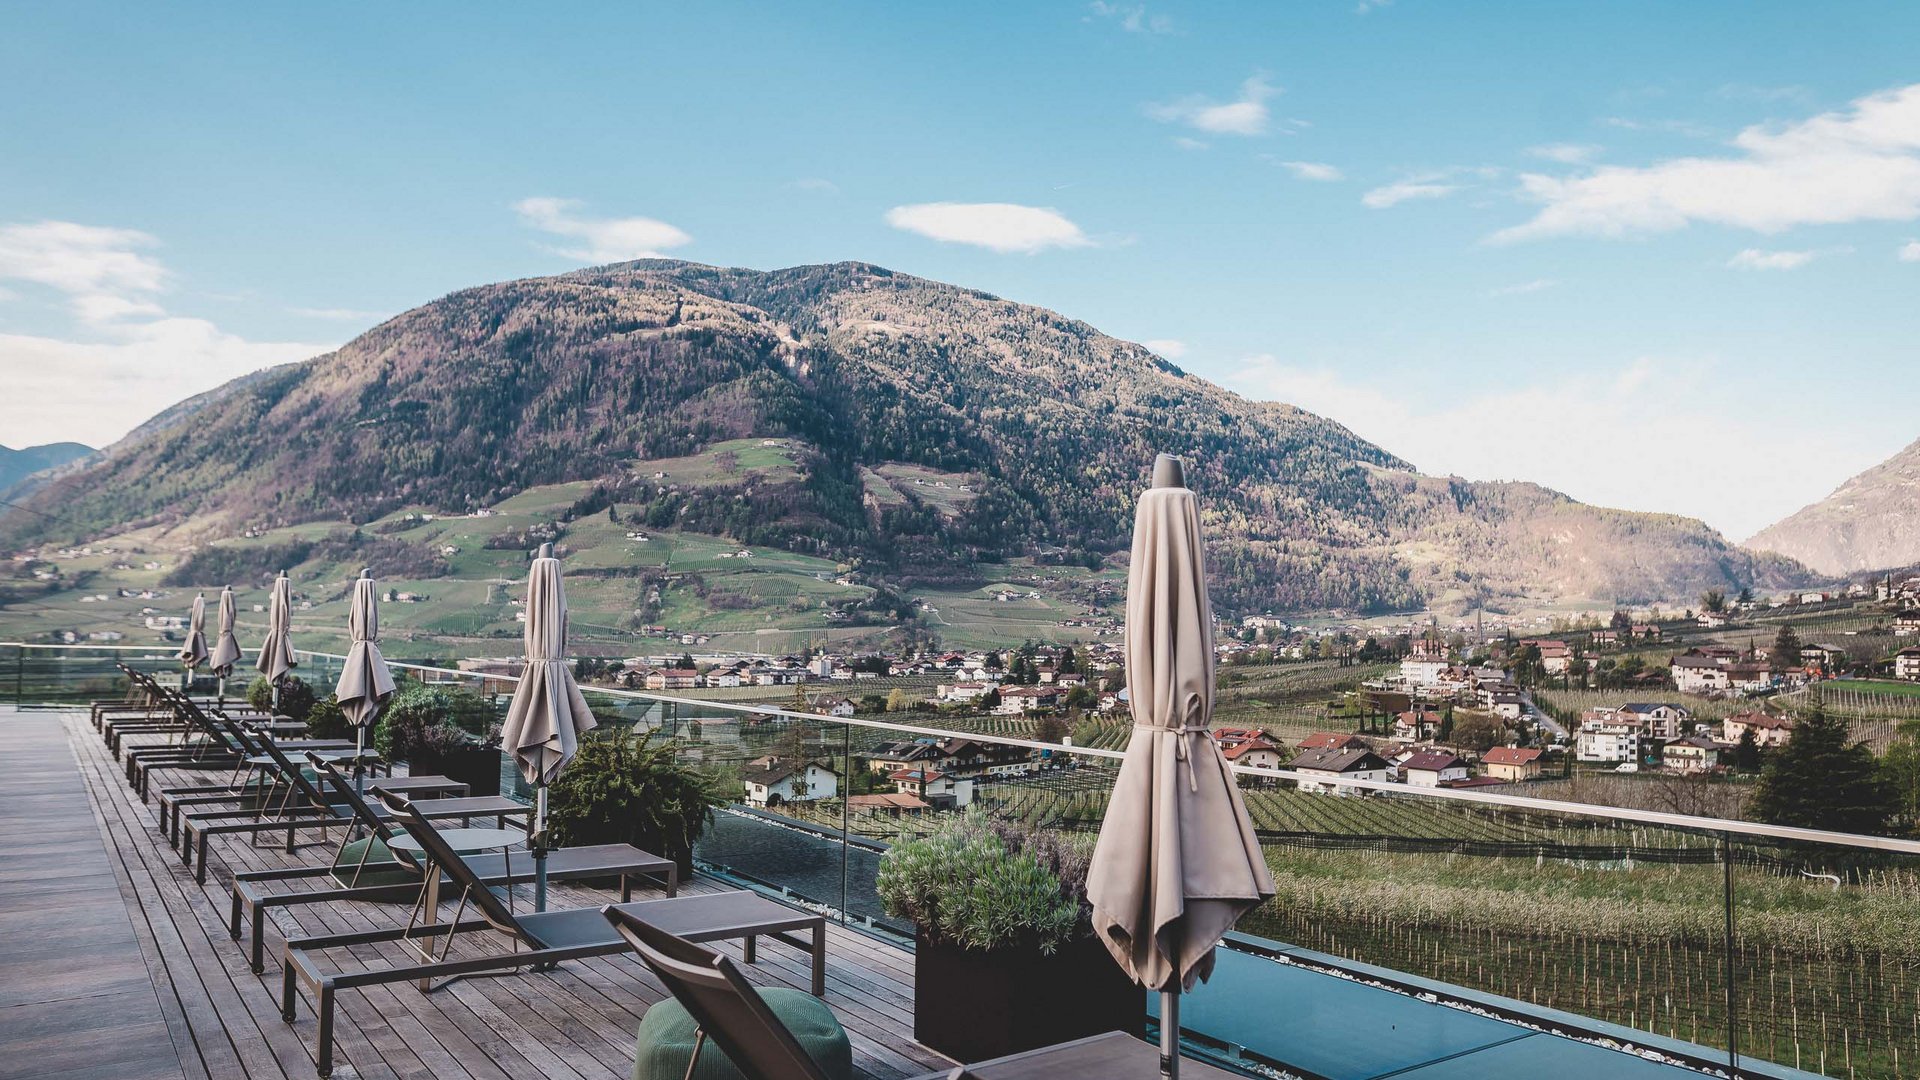 Cercate un hotel in Alto Adige con piscina panoramica?